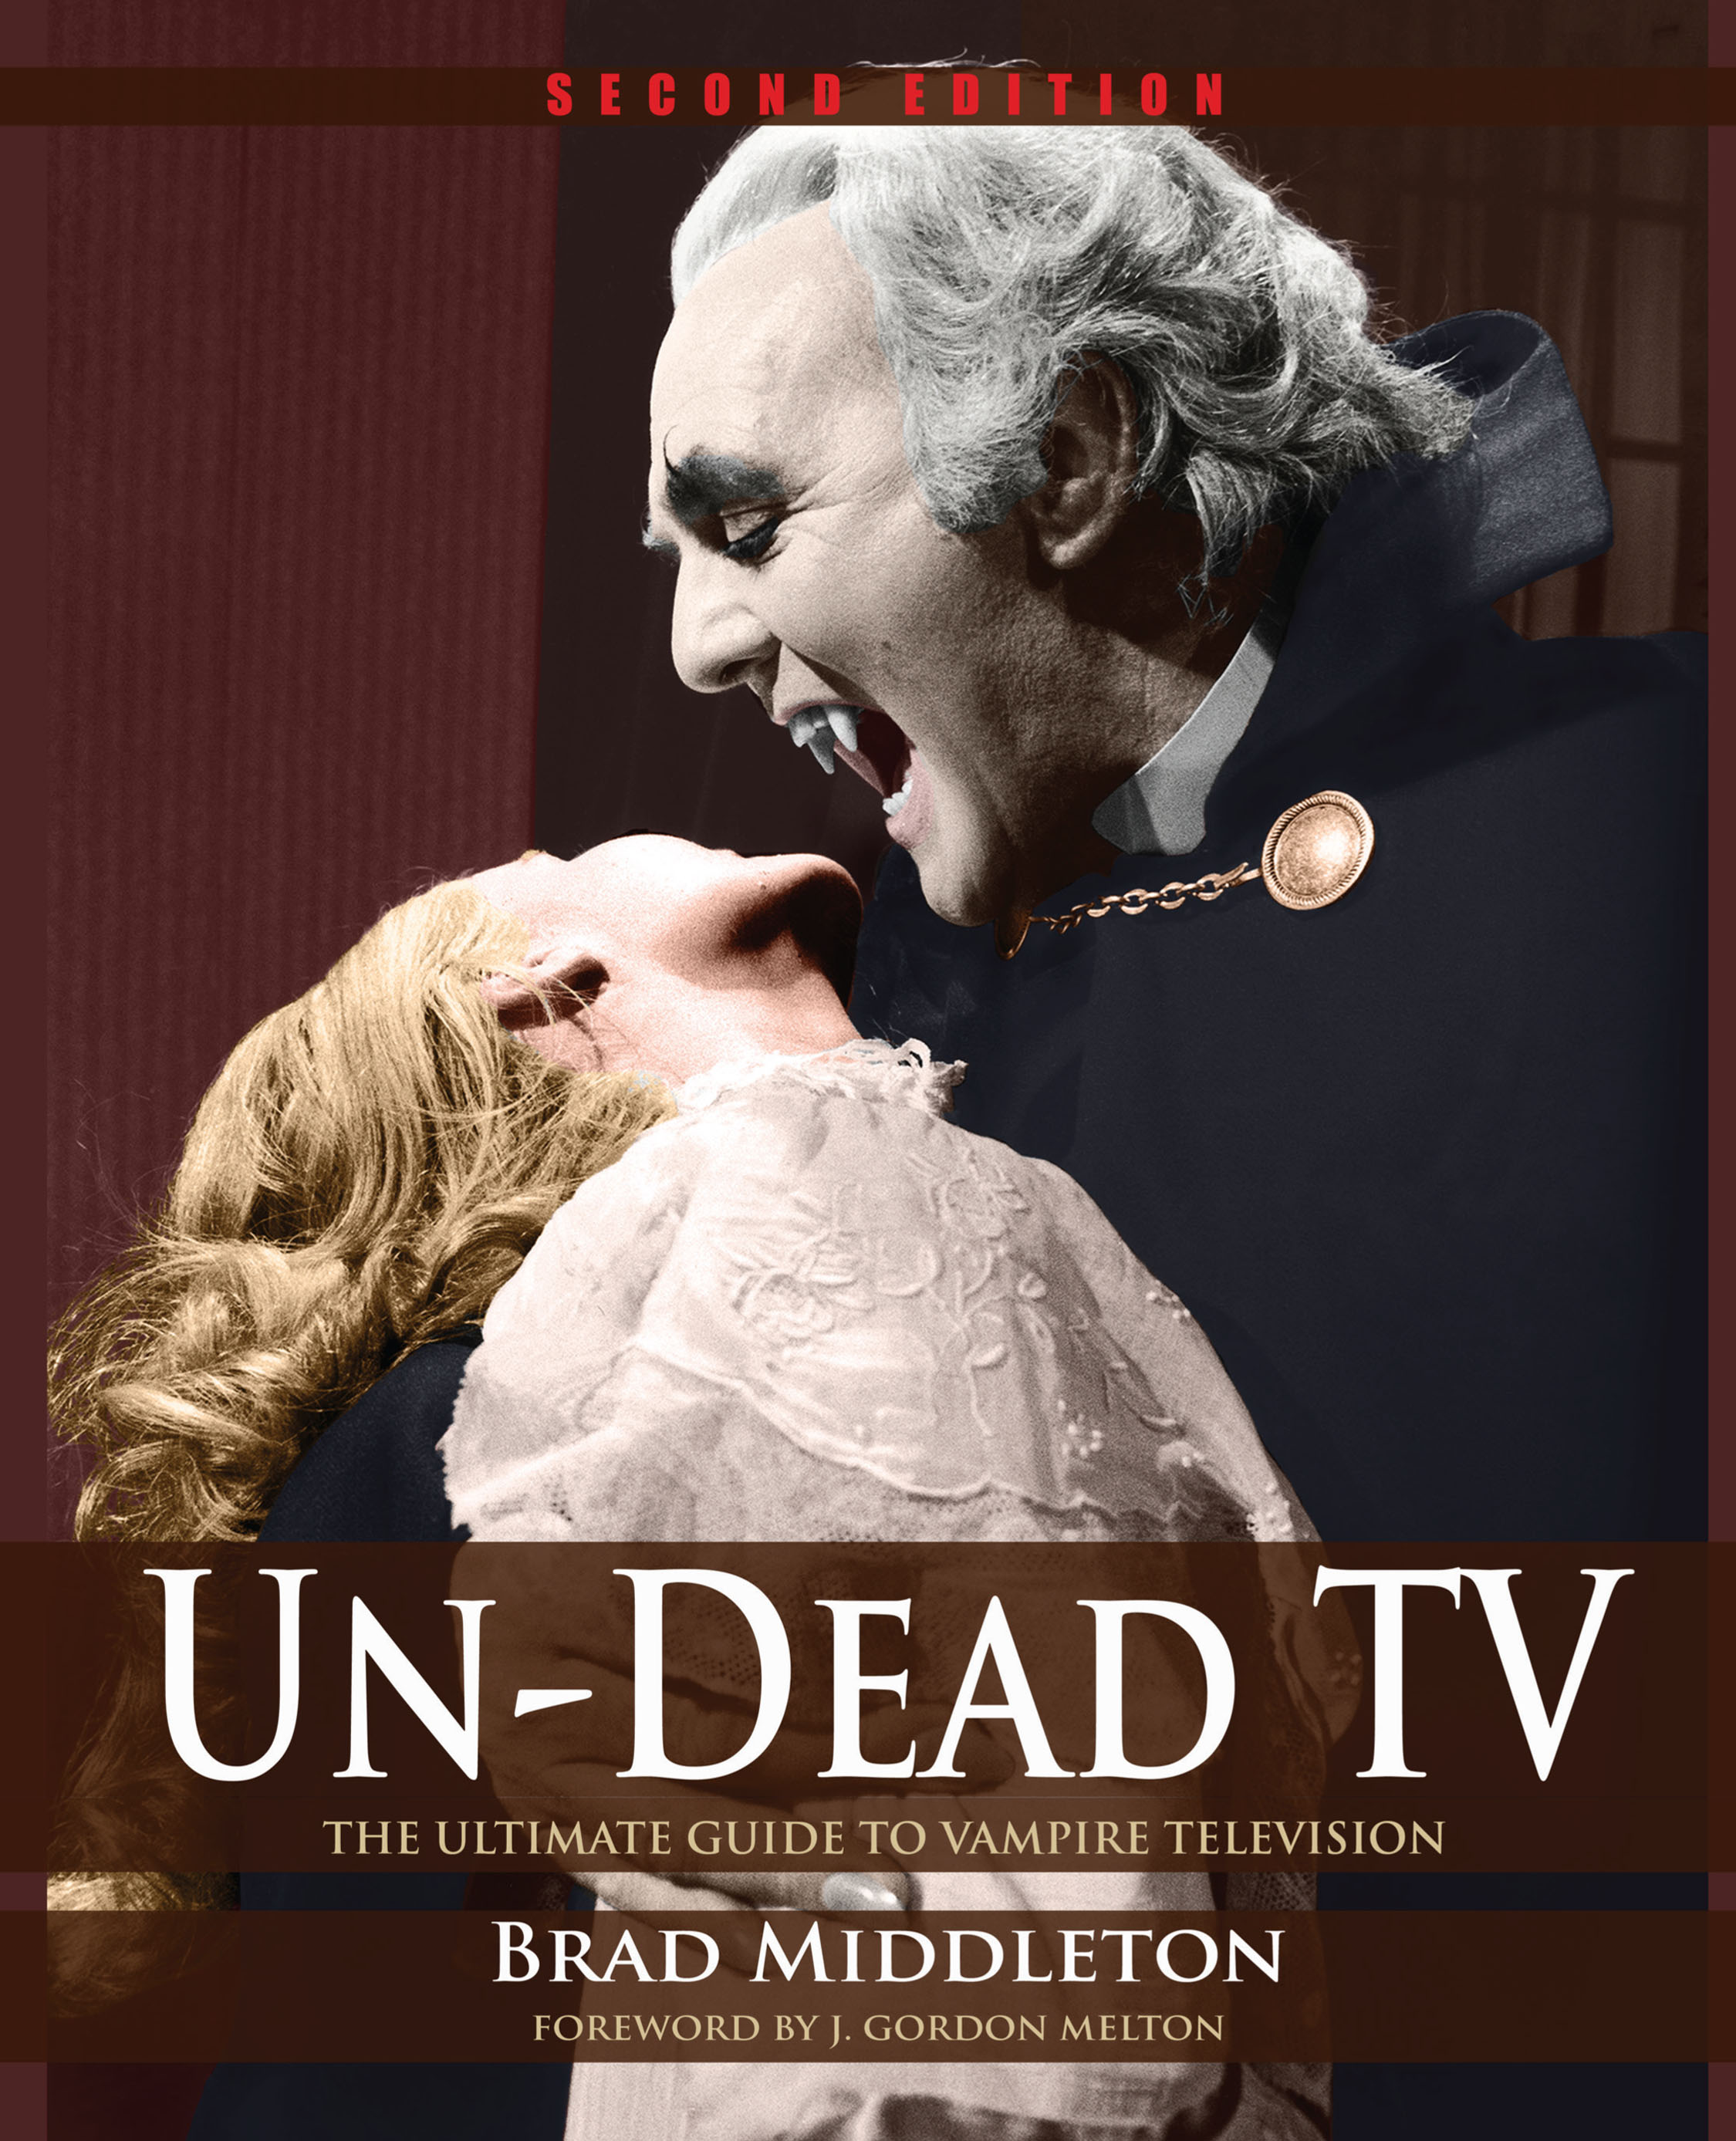 Un-Dead TV front cover